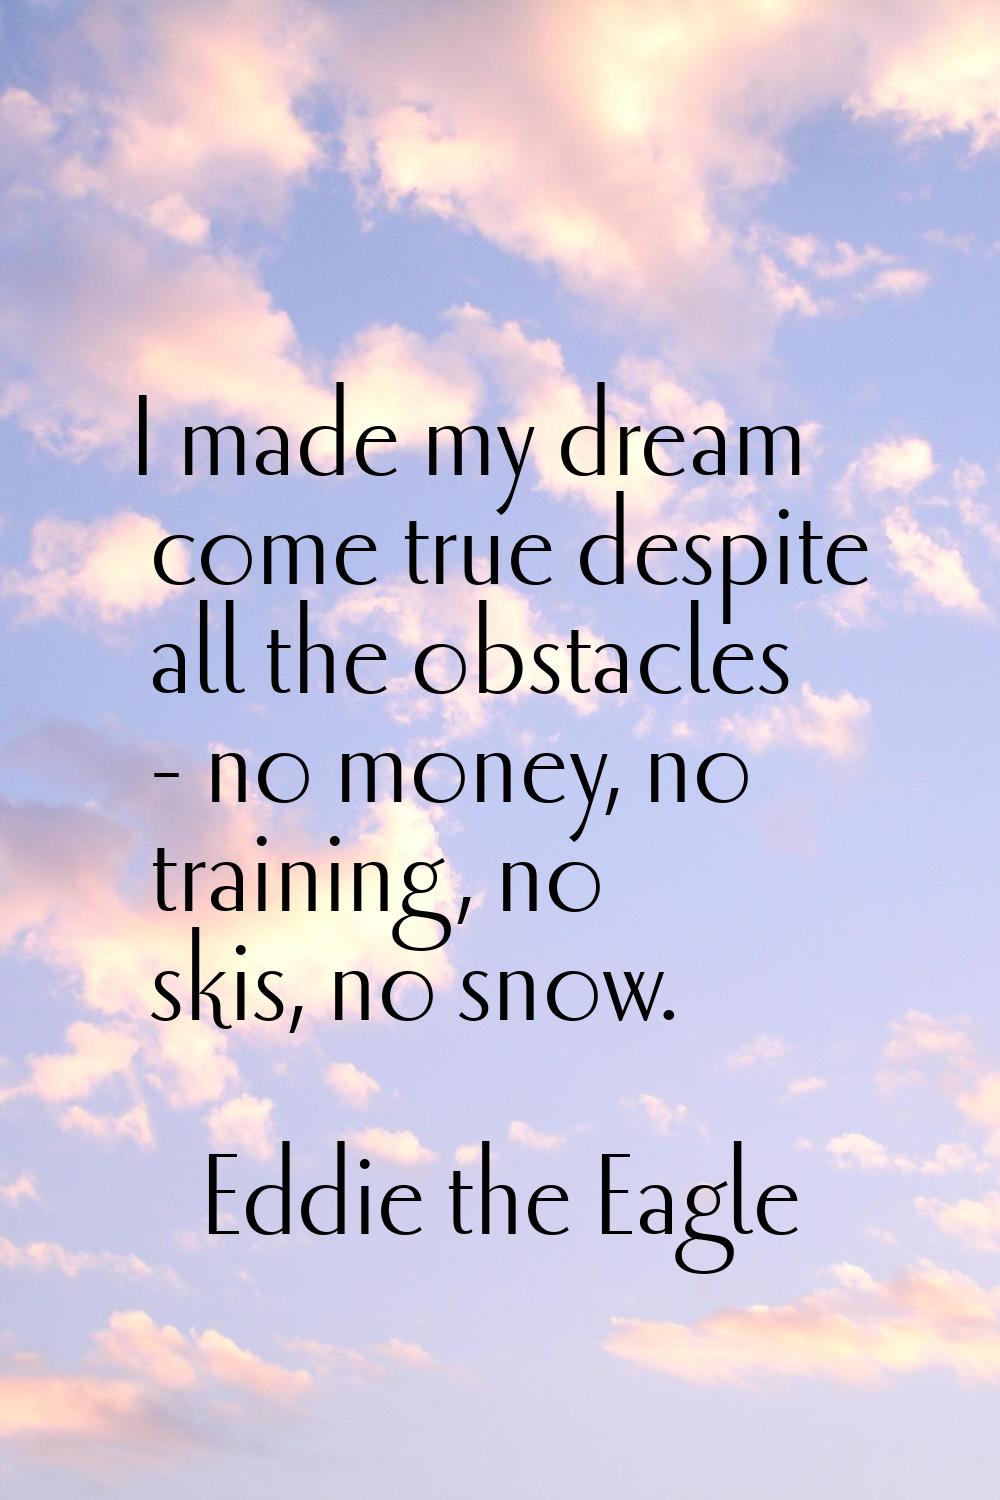 I made my dream come true despite all the obstacles - no money, no training, no skis, no snow.